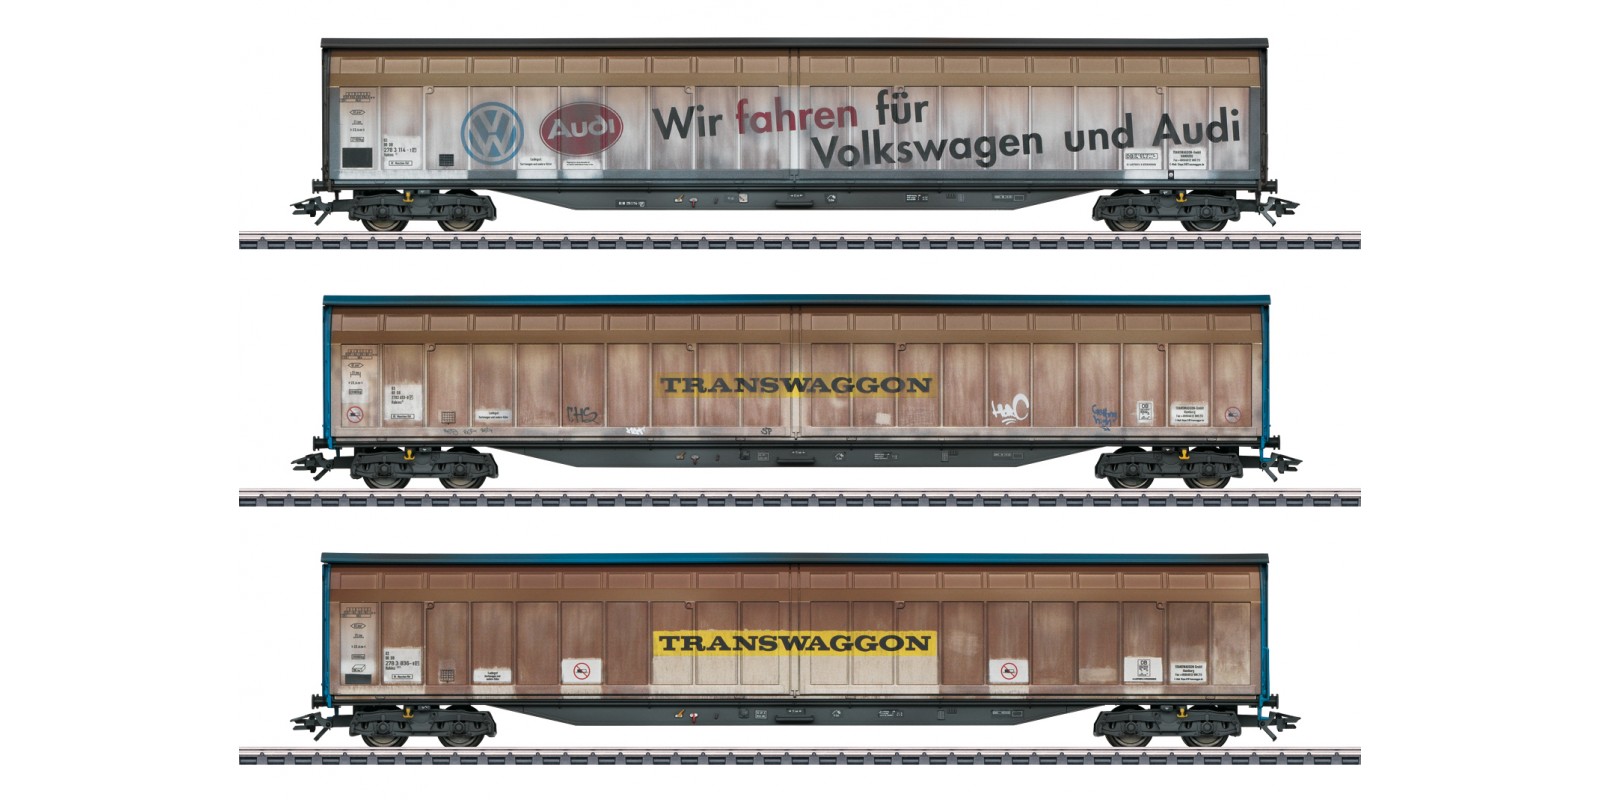 48063 "Transwaggon" Sliding Wall Boxcar Set